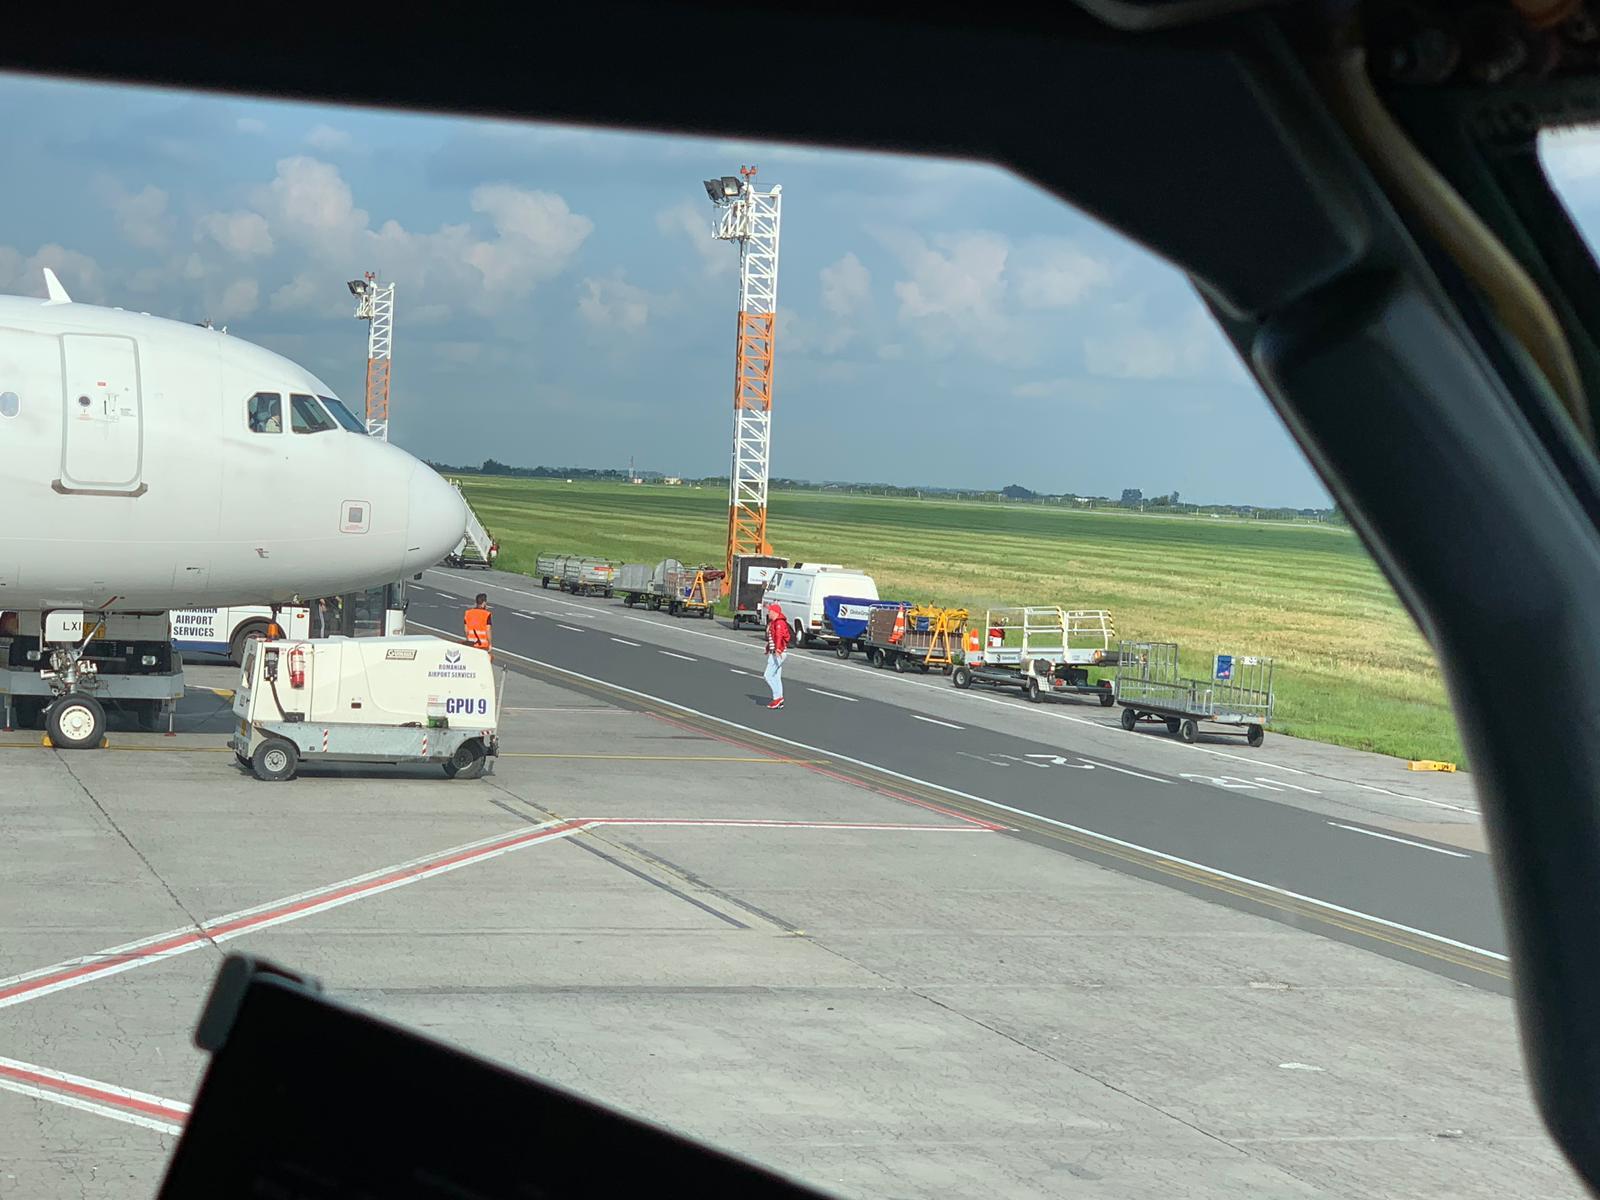 După ce şi-a făcut nevoile pe pistă, pasagerul s-a urcat în avion, pe aeroportul Otopeni